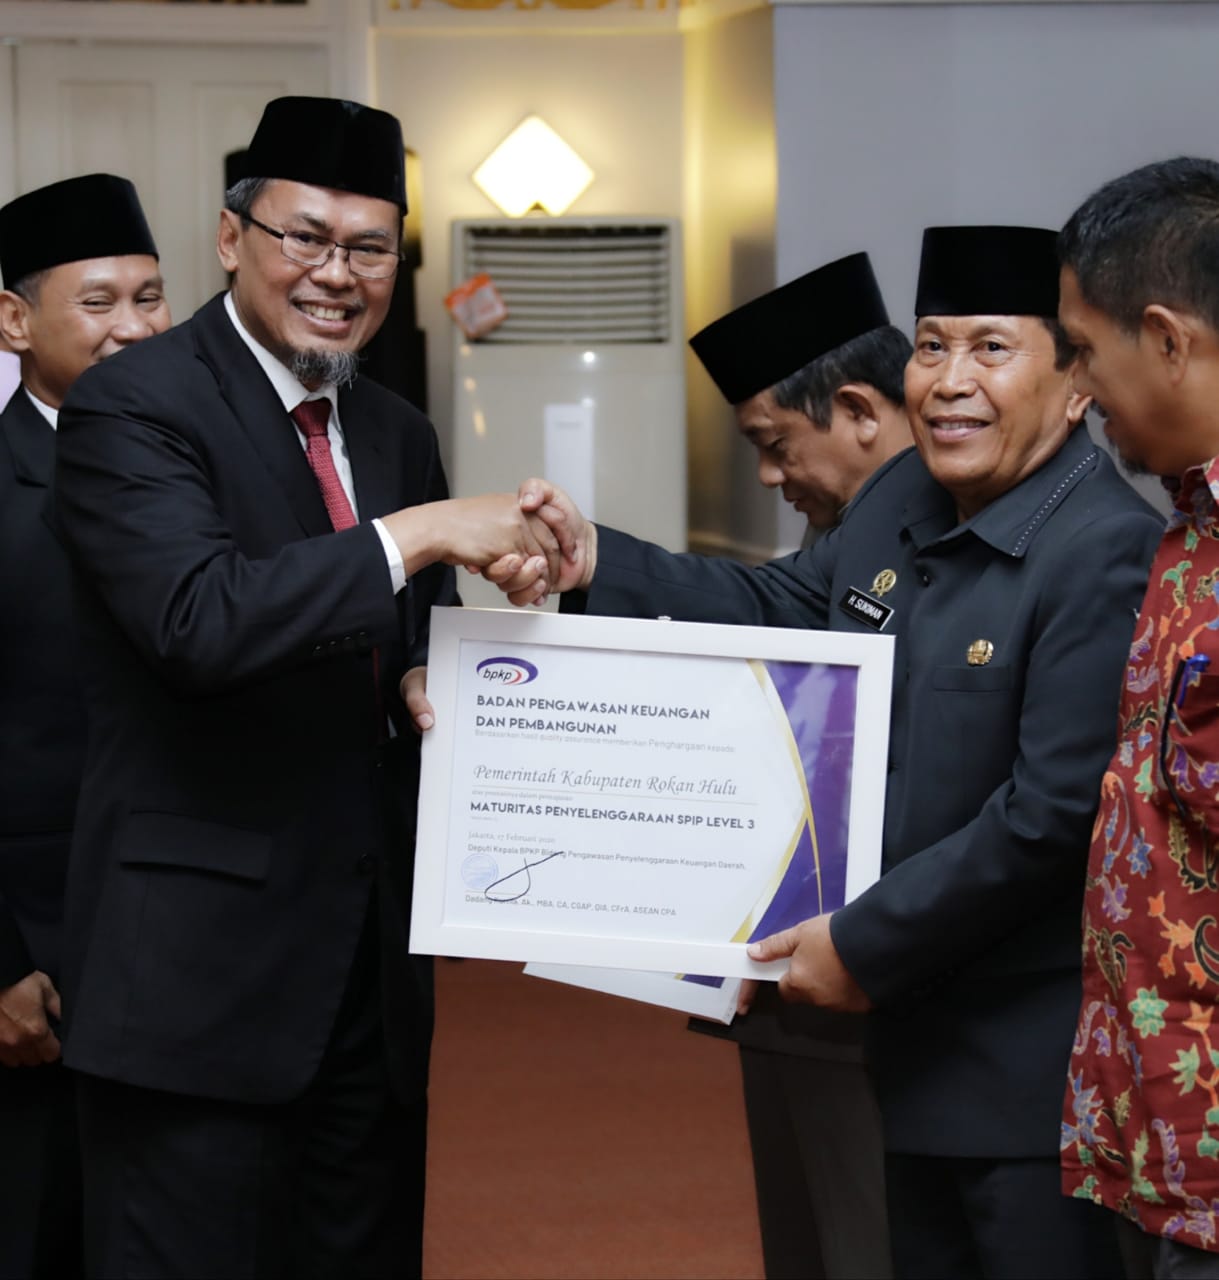 Pemkab Rohul Raih Penghargaan SPIP Maturitas Dari Pemerintah Pusat